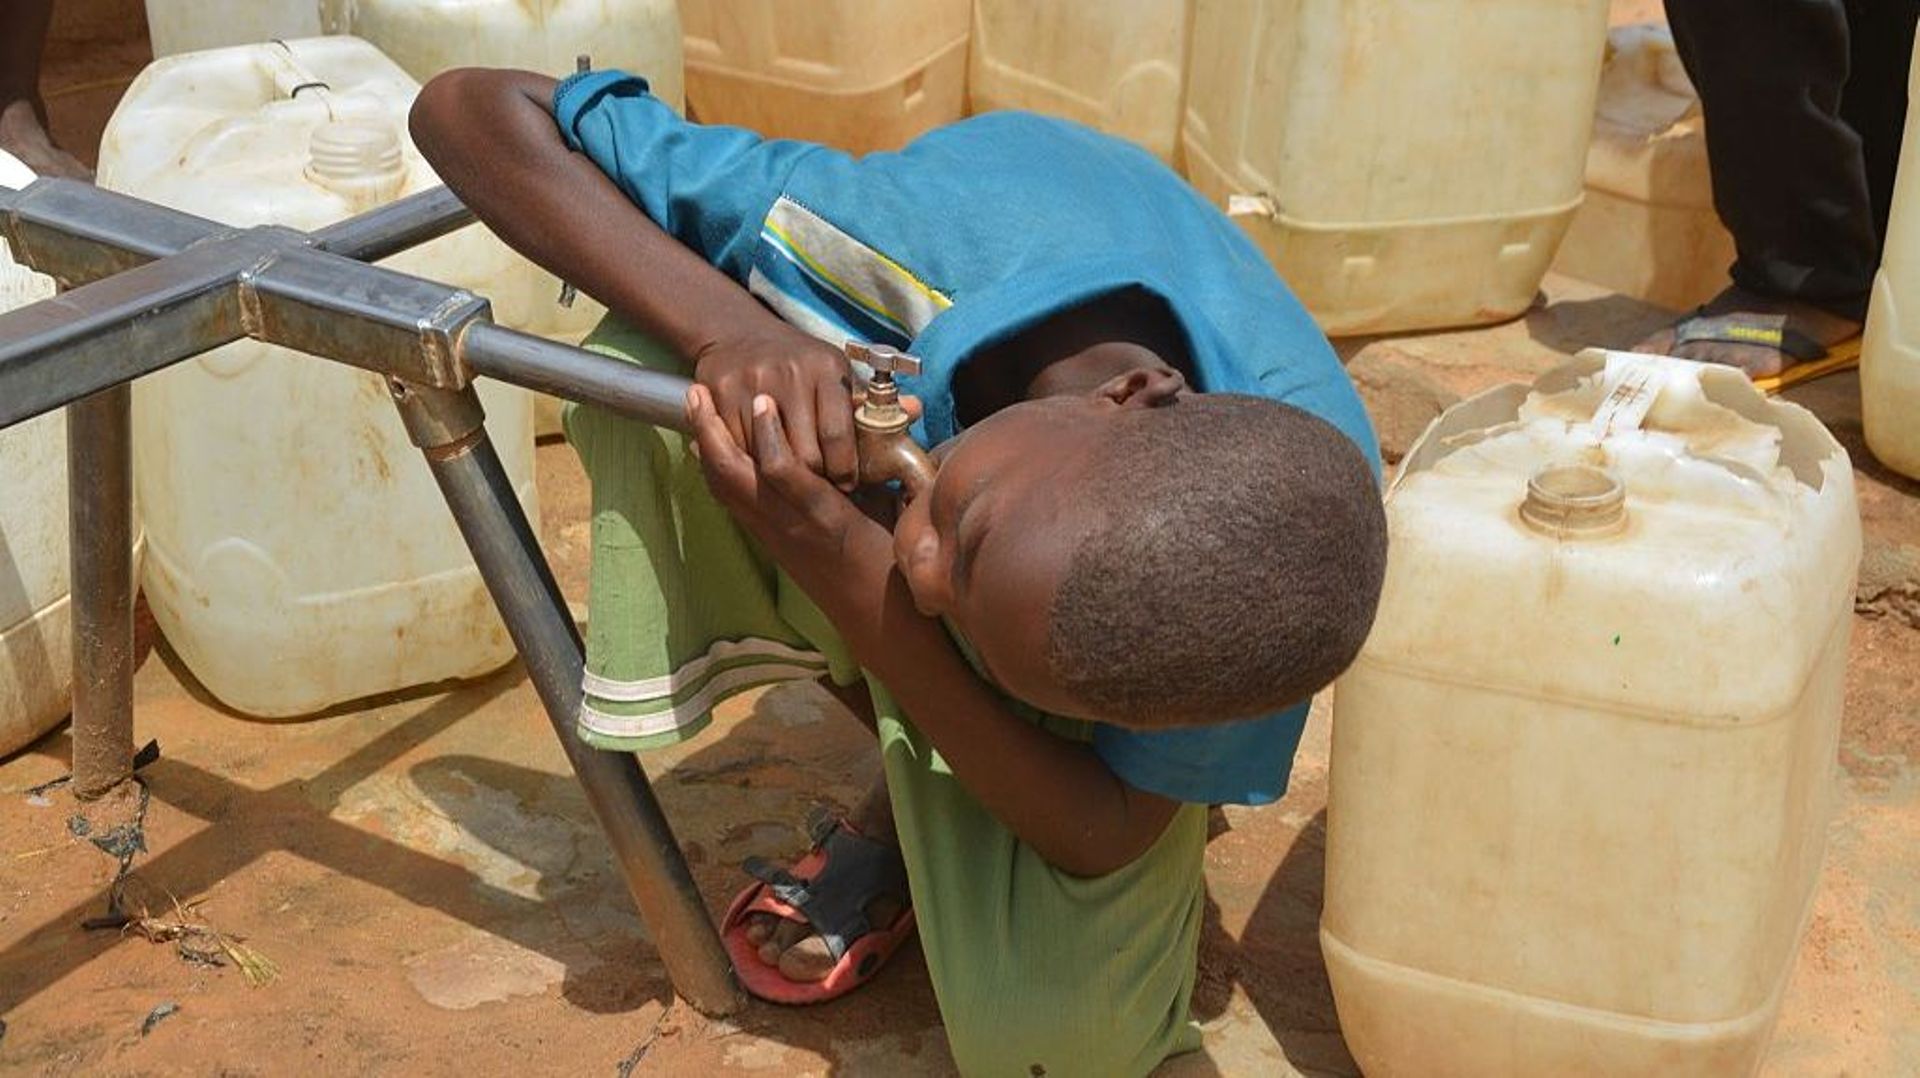 Image d'illustration : Un enfant réfugié boit de l'eau d'un puits alors qu'il tente de vivre dans des conditions difficiles dans les camps de réfugiés soutenus par l'UNICEF au Darfour, au Soudan, le 26 septembre 2015.